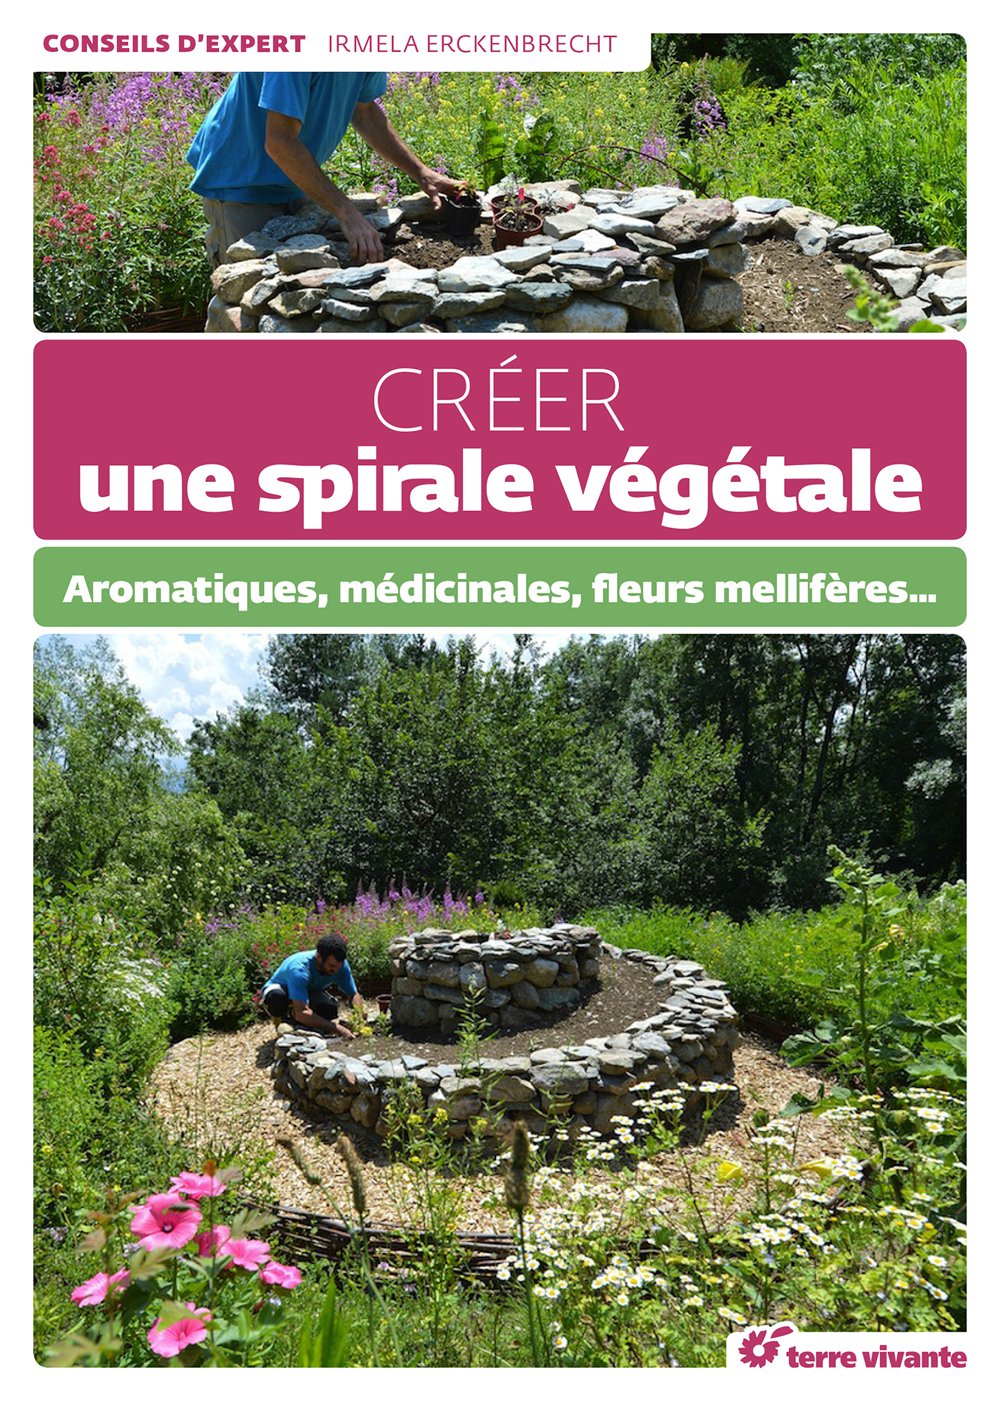 Exemple D Aménagement De Jardin Nouveau Créer Une Spirale Végétale Amazon Erckenbrecht Irmela